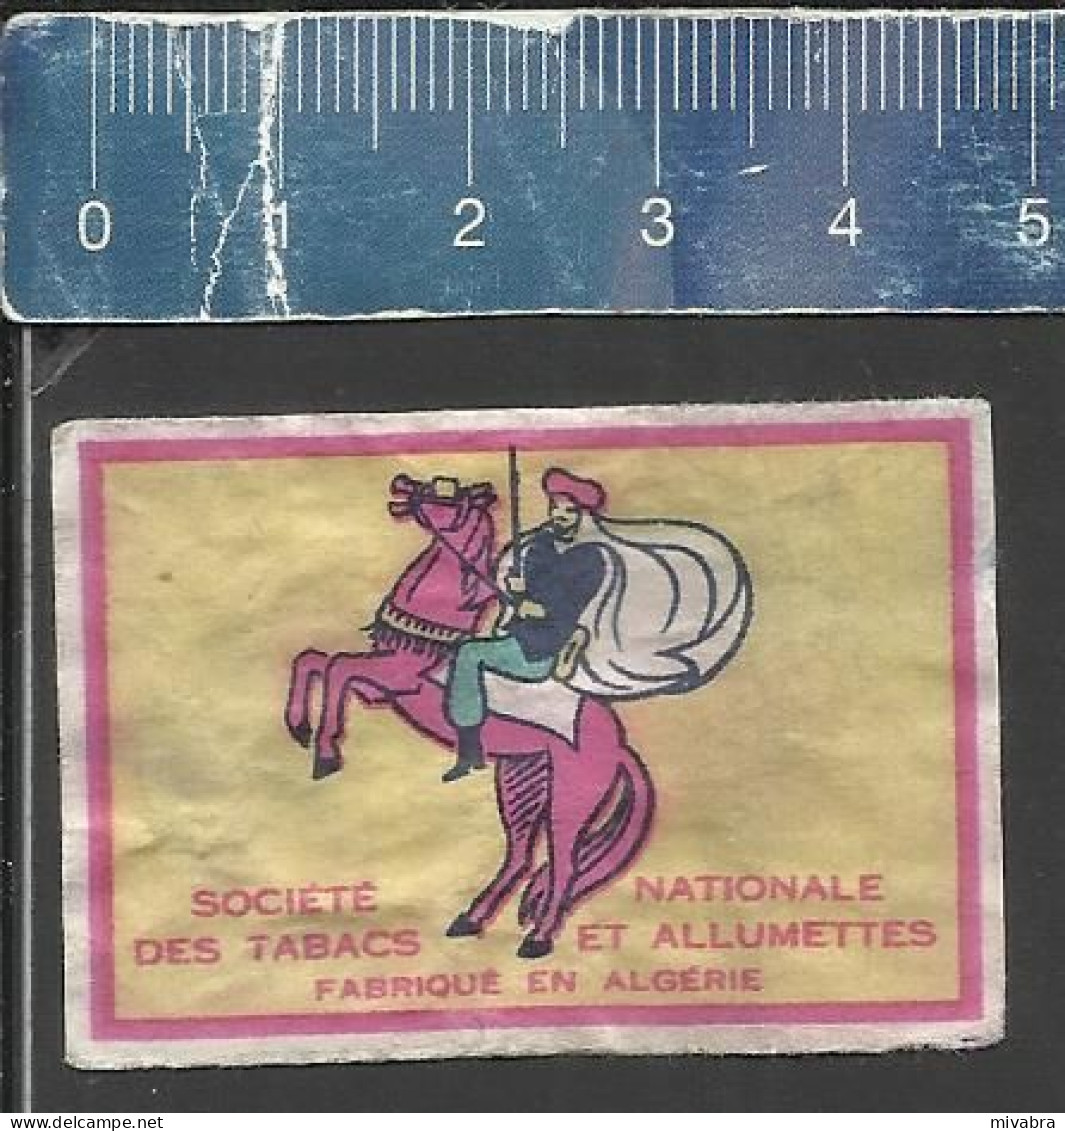 HORSEMAN (RUITER CAVALIER) - OLD MATCHBOX LABEL ALGERIA - Cajas De Cerillas - Etiquetas